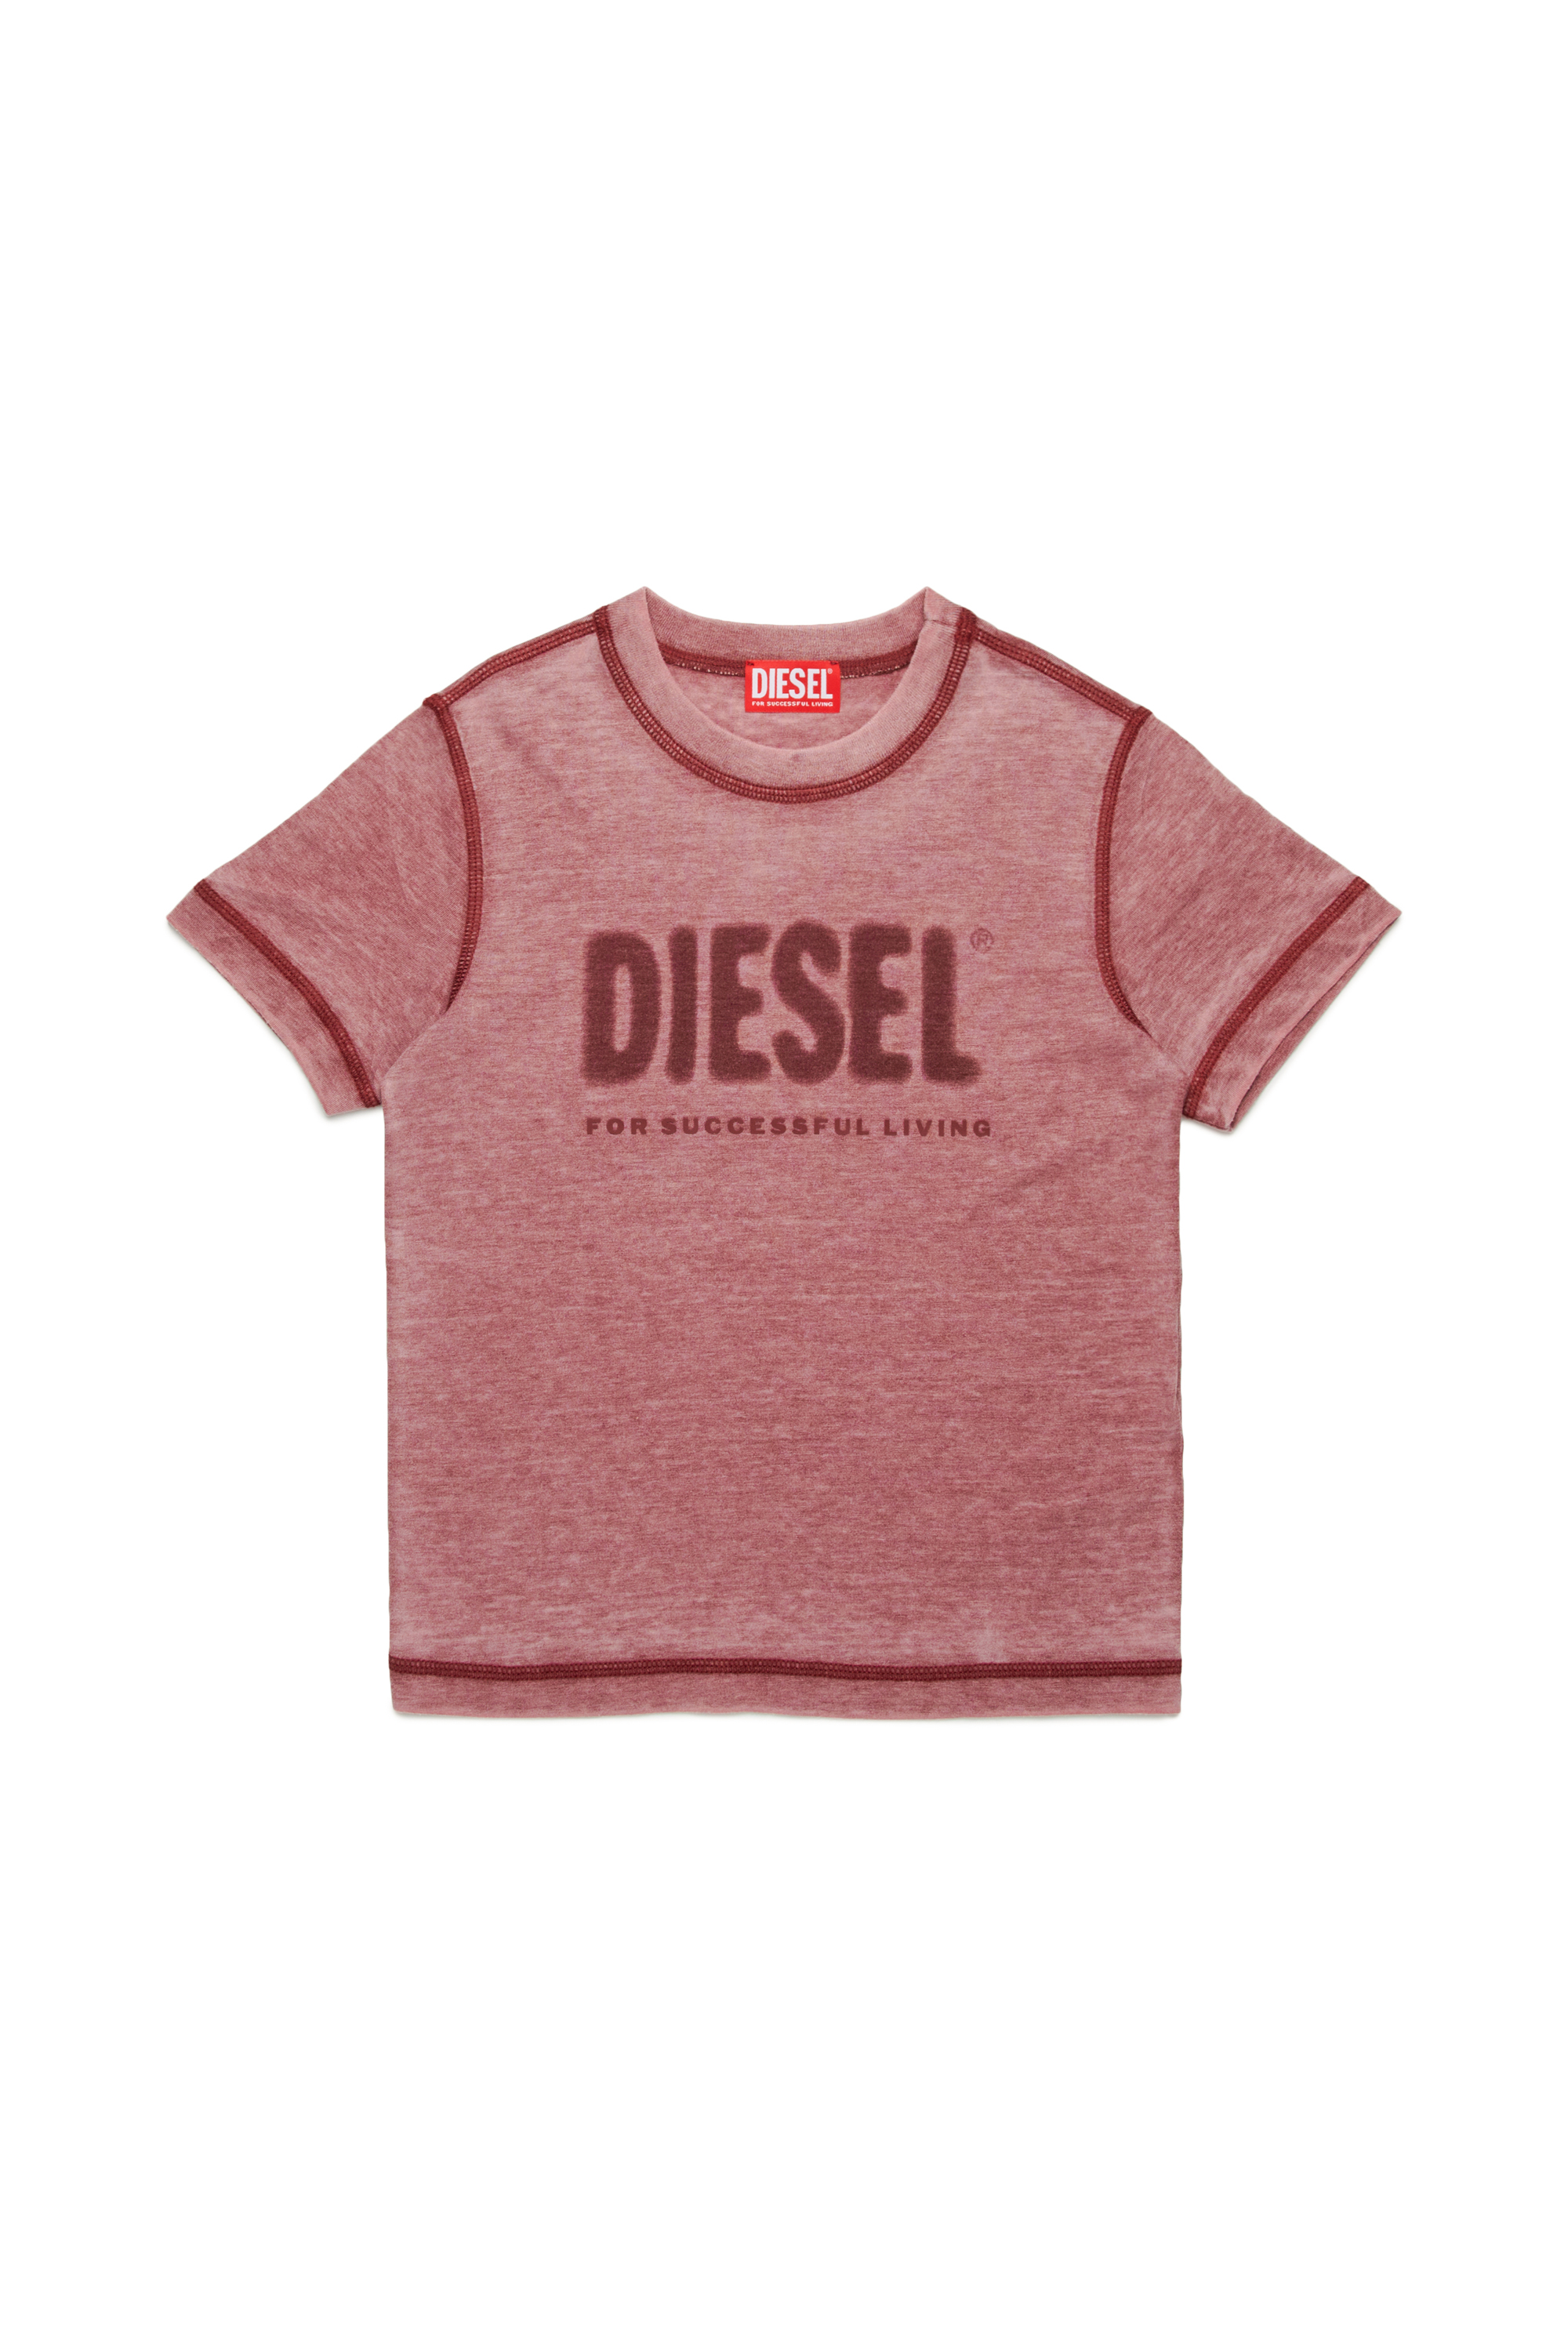 Diesel - TDIEGORL1, Herren Burnout-T-Shirt mit Logo in Rot - Image 1